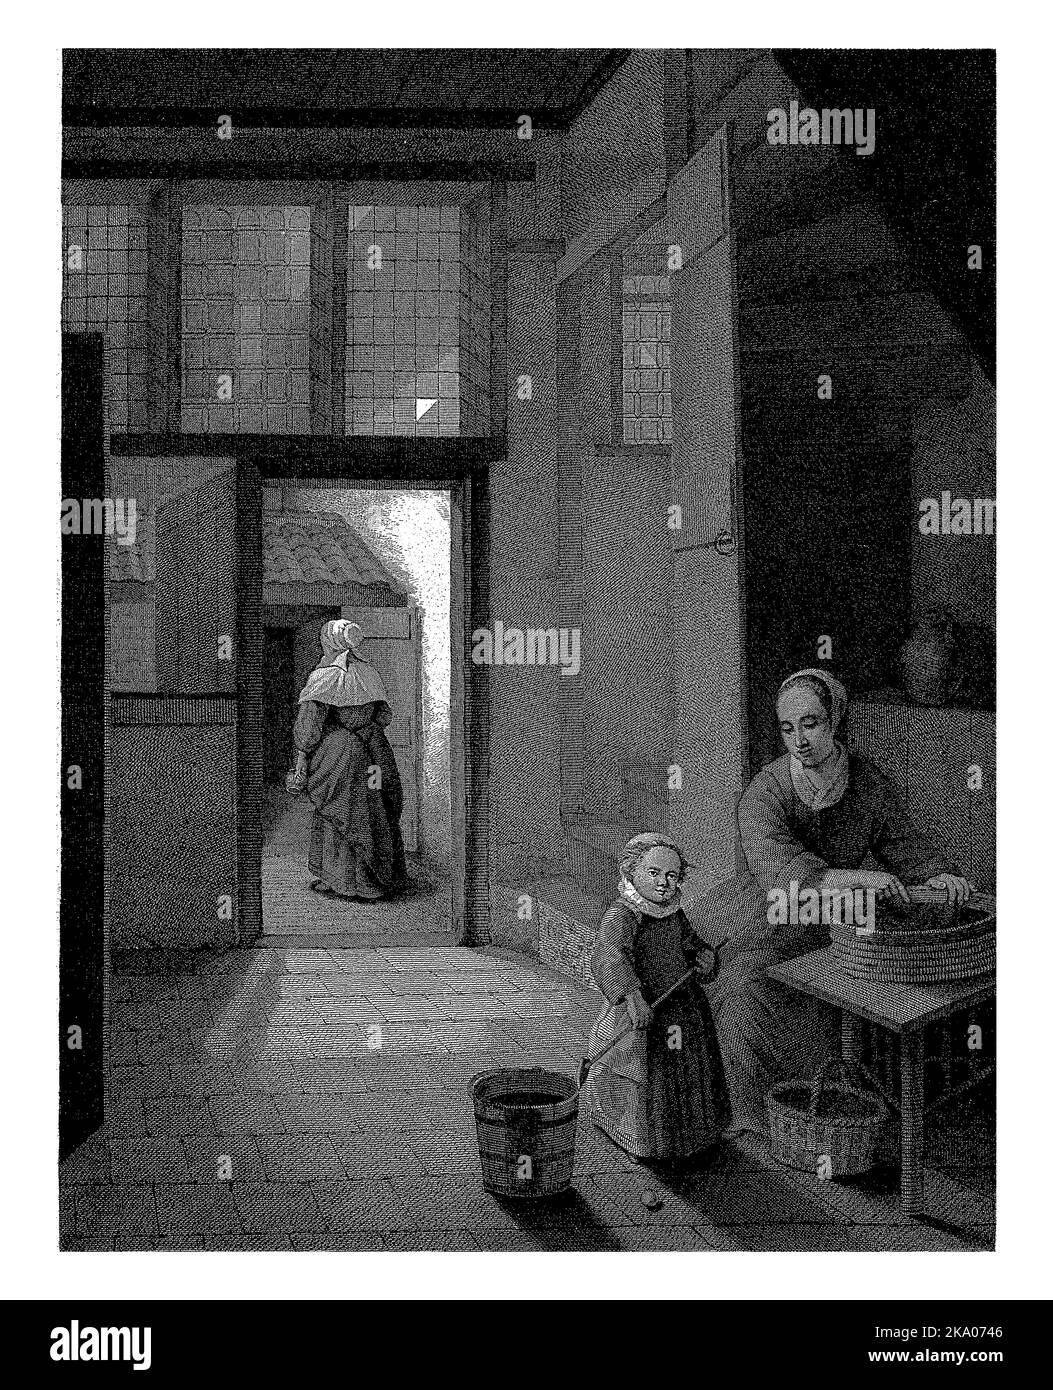 In einem Raum liest eine Frau Körner oder Hülsenfrüchte. Neben ihr ist ein Mädchen, das eine Flasche spielt. Durch eine Tür zum Hof eine alte Frau mit einem Milchkännchen. Stockfoto